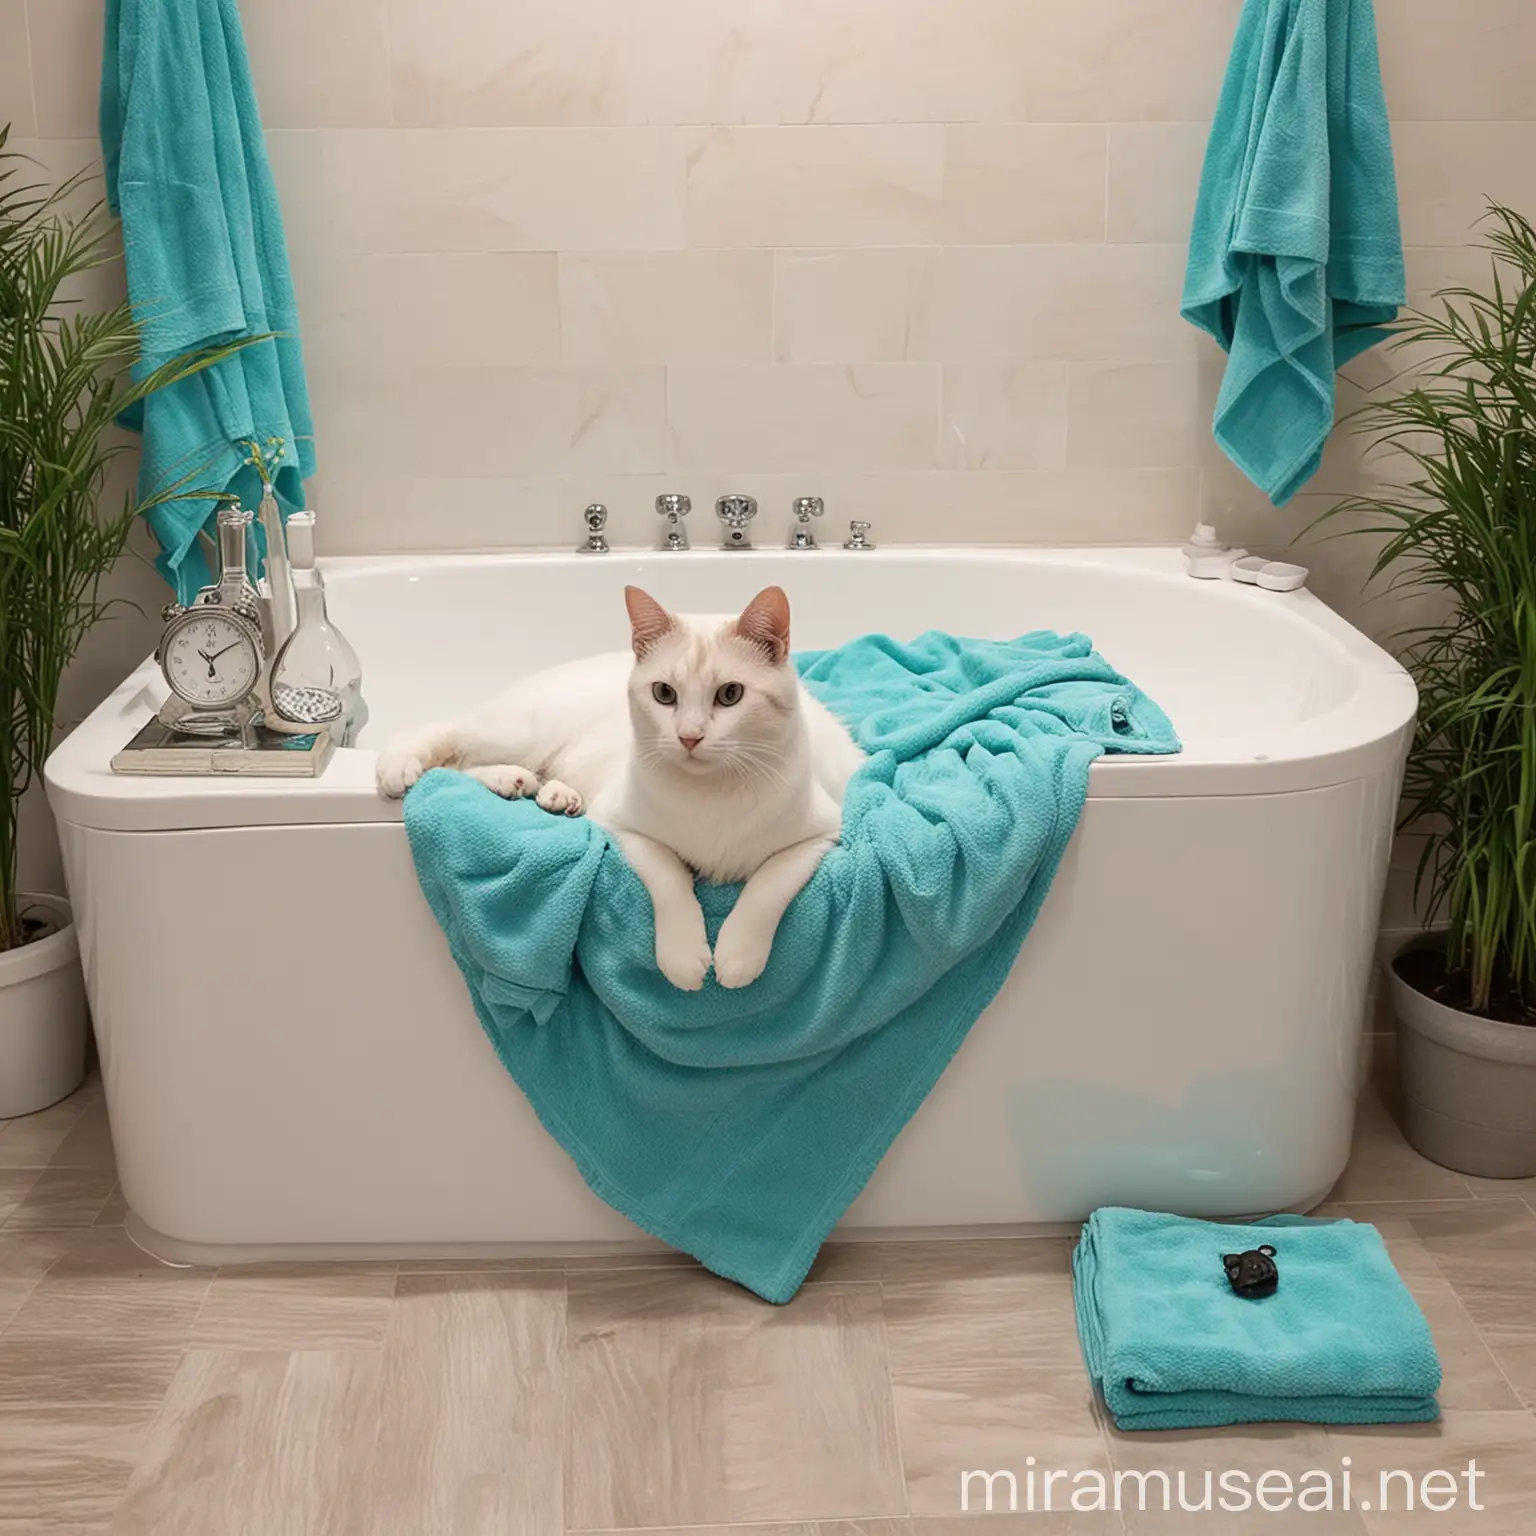 Кошка сидит в джакузи. Рядом белой тумбочке лежат бирюзовые полотенца. 